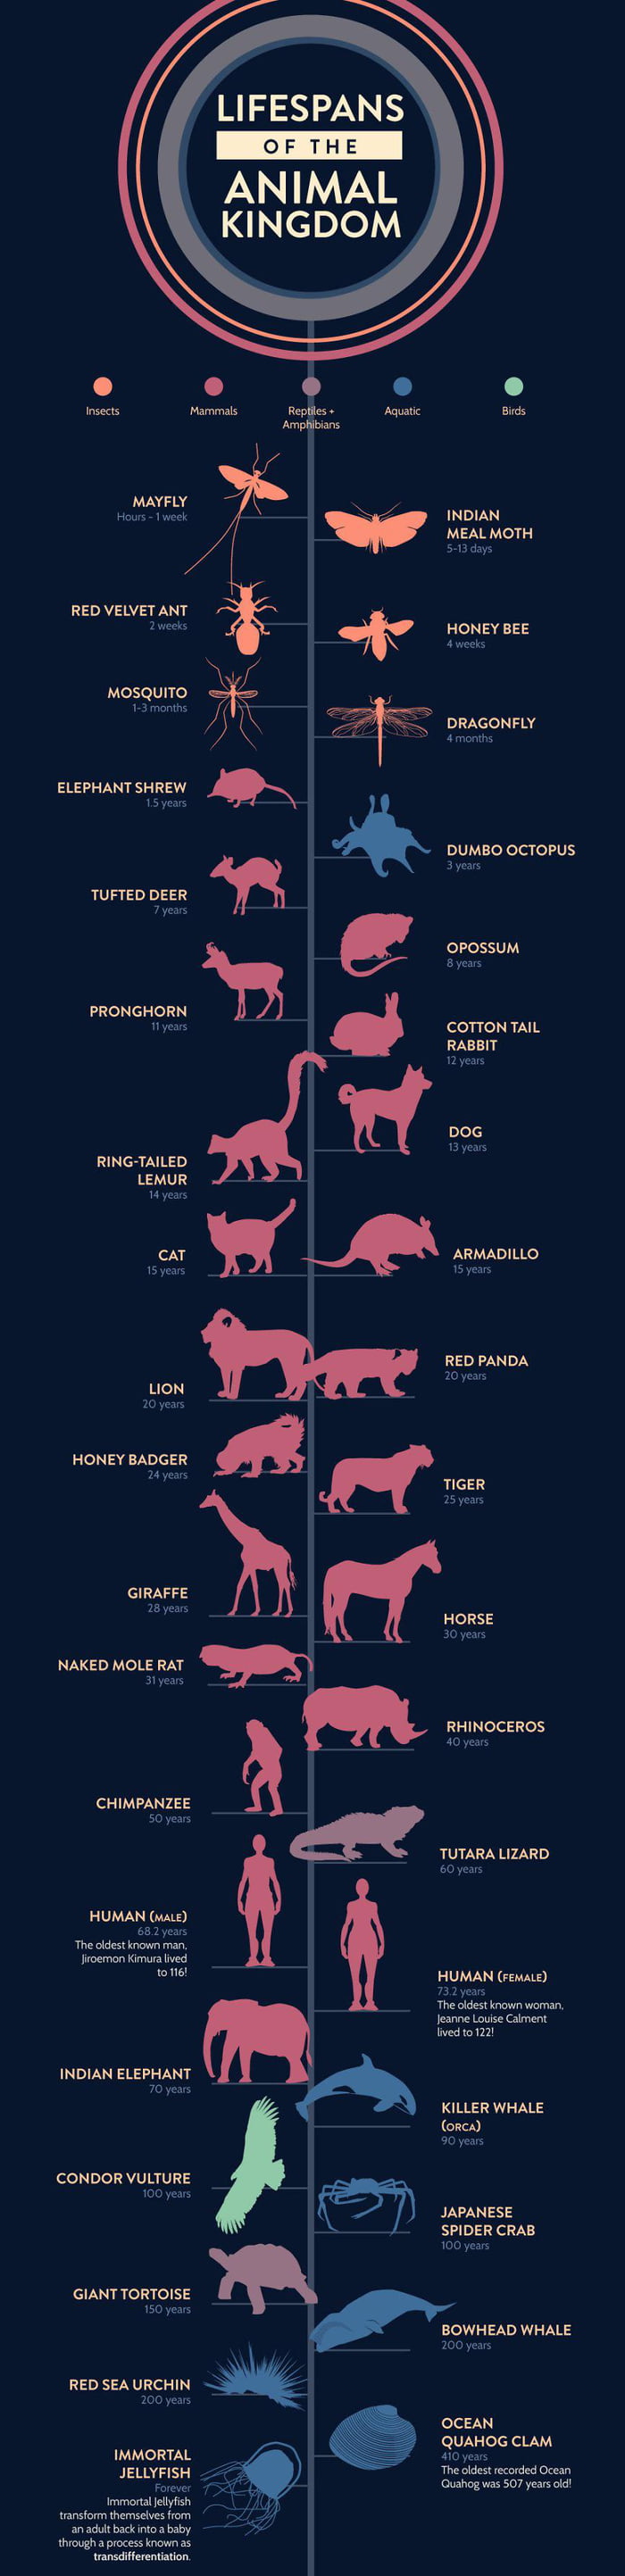 lifespan of the animal kingdom